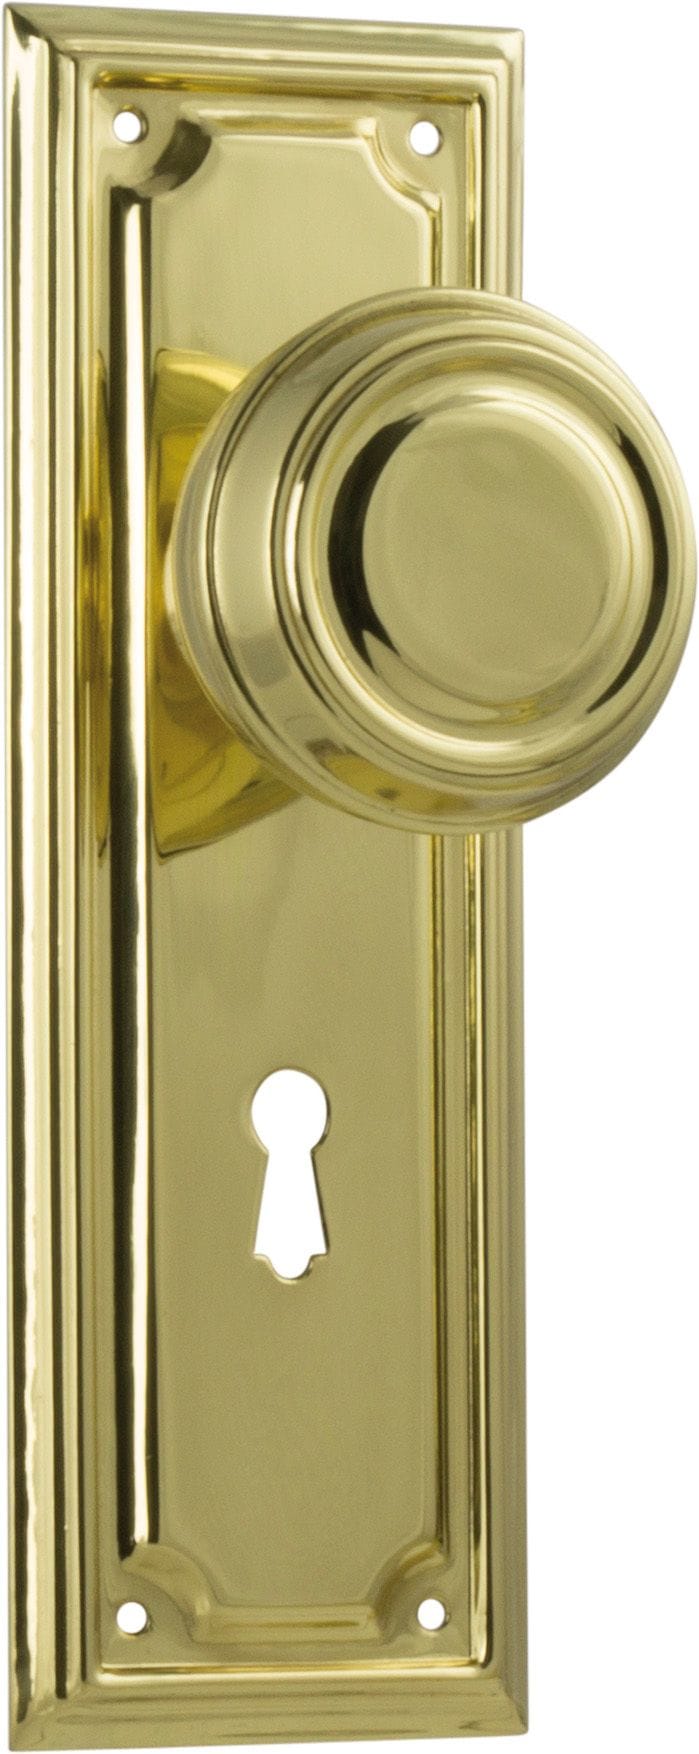 Edwardian Knob Lock Polished Brass